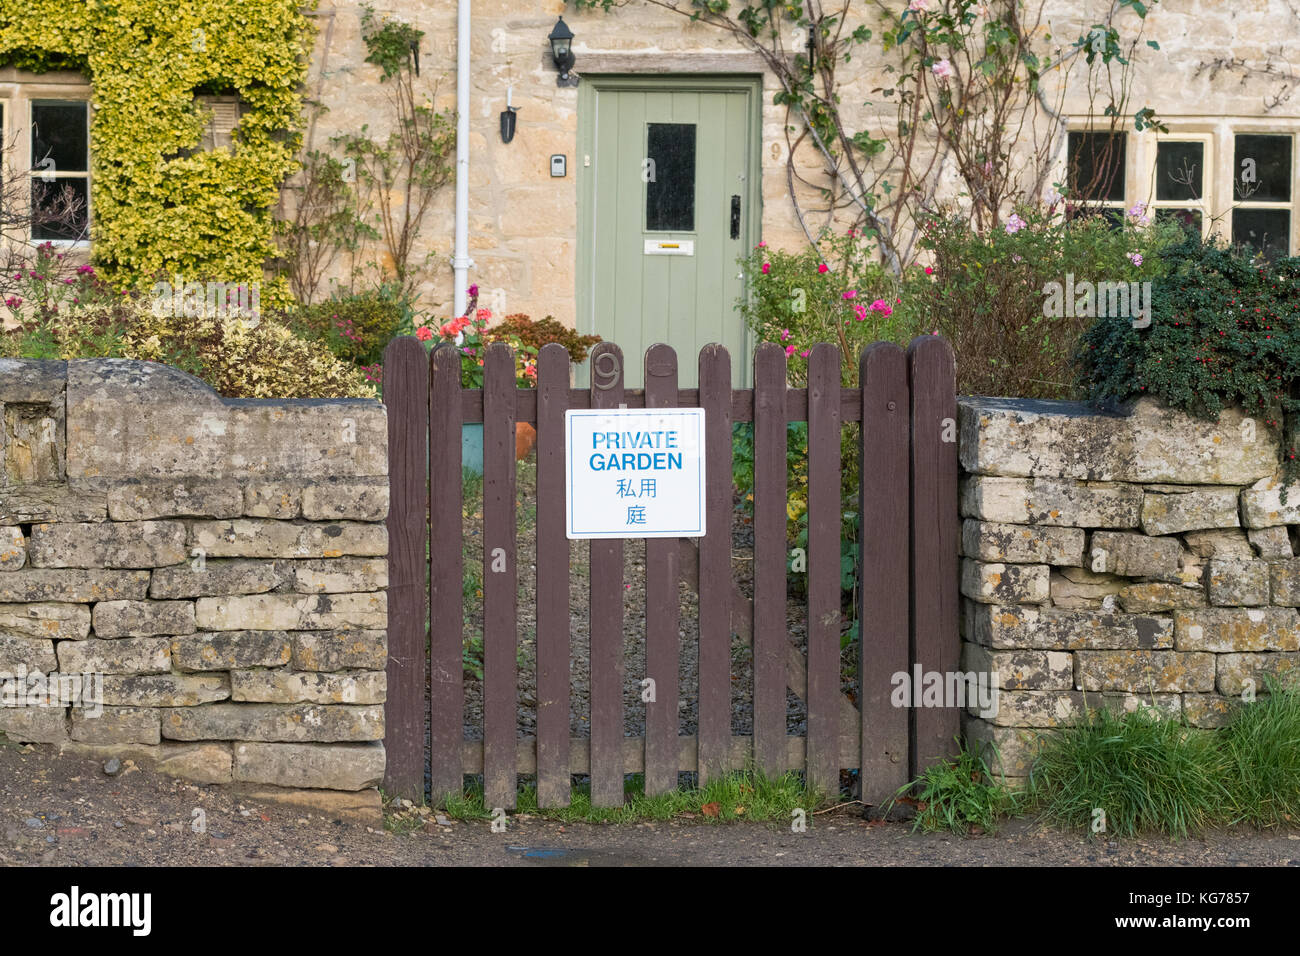 Turismo di Bibury - cartello 'Giardino privato' sul cancello del giardino scritto in Inglese e Giapponese - Bibury, Gloucestershire, Inghilterra, Regno Unito Foto Stock